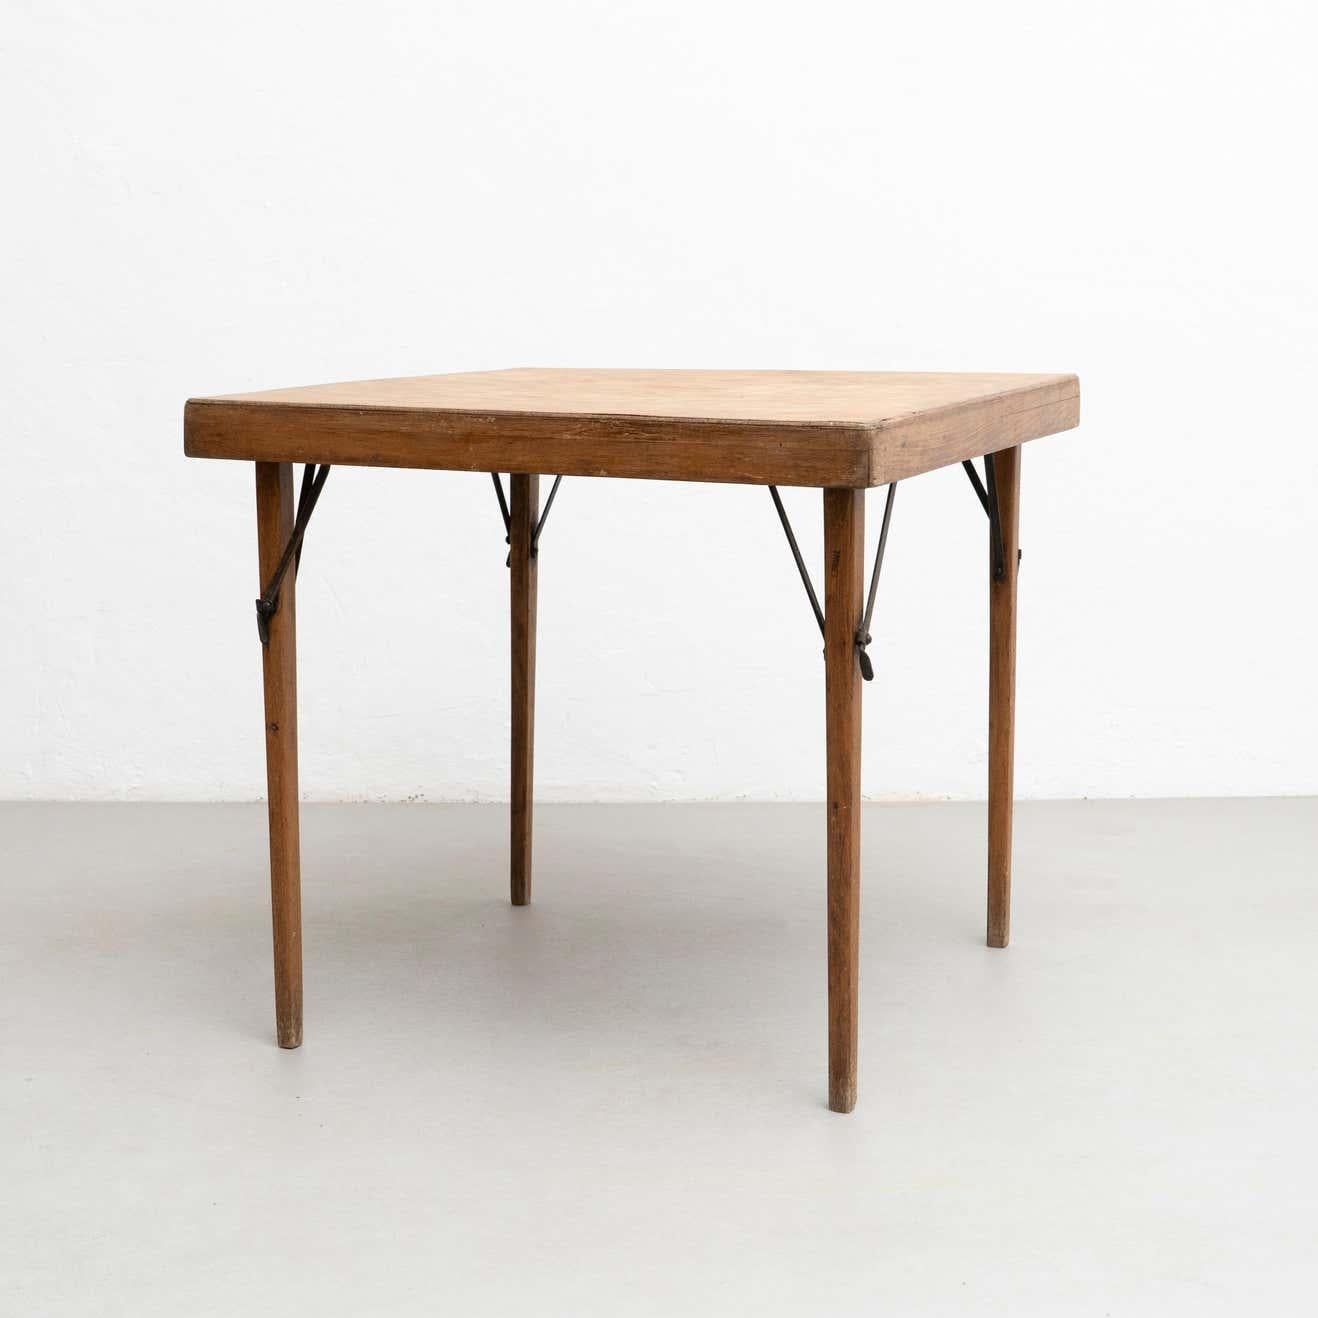 Rare table pliante T211 conçue par Thonet et fabriquée en Allemagne, vers 1930.

En bon état d'origine, avec une usure mineure conforme à l'âge et à l'usage, préservant une belle patine.

Dans les années 1830, Thonet a commencé à essayer de